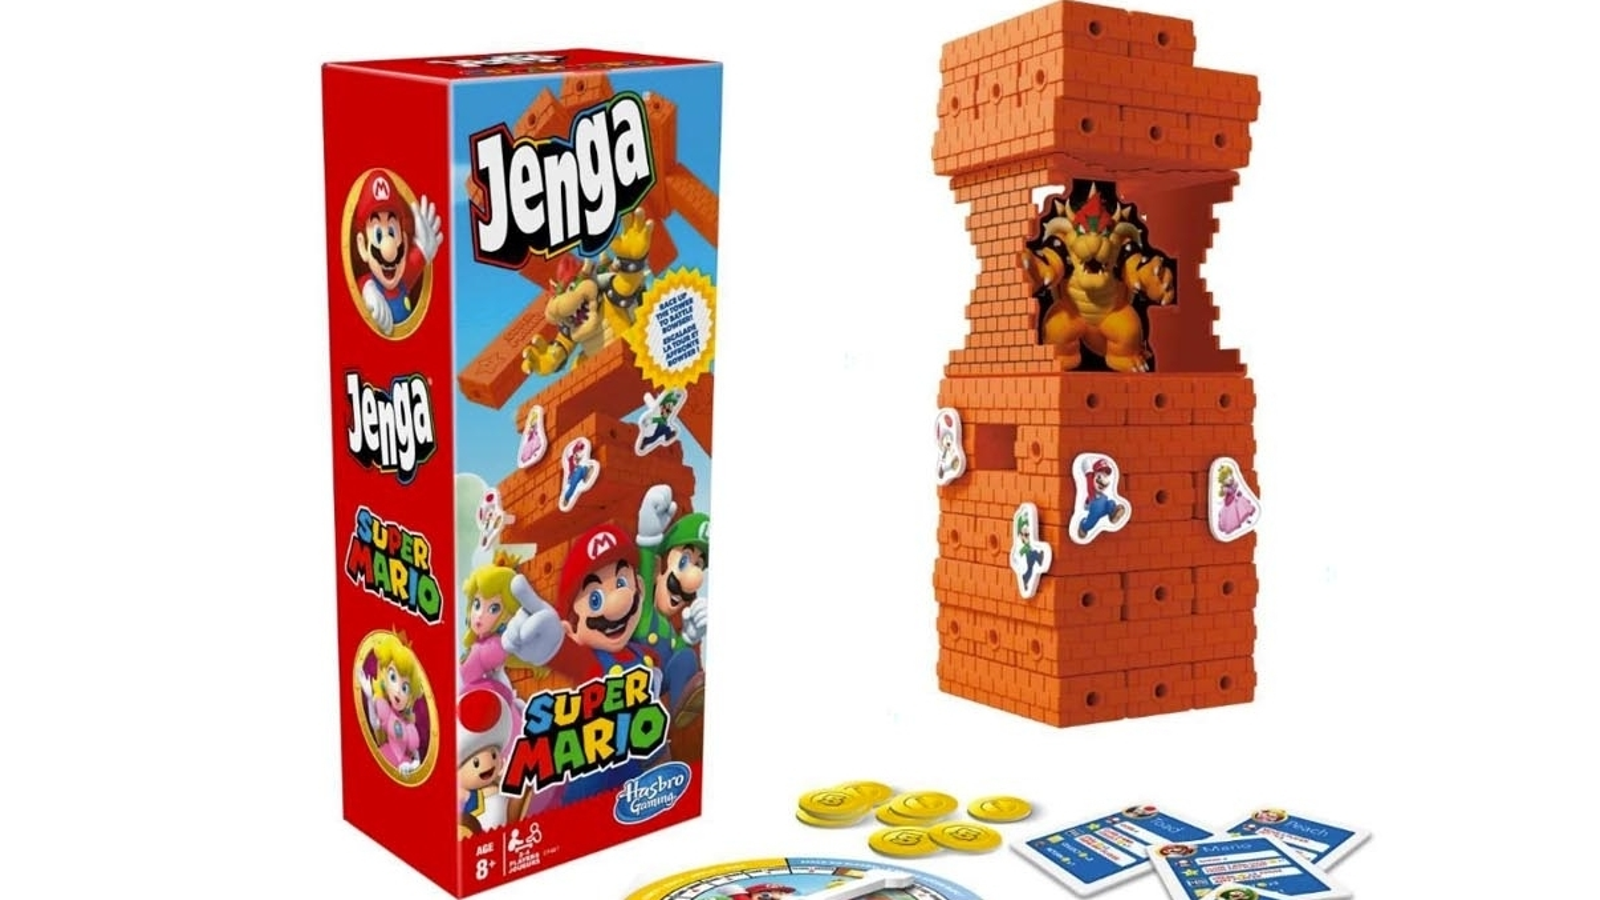 Jogo Monopoly Super Mario Celebration 35 Anos « Blog de Brinquedo